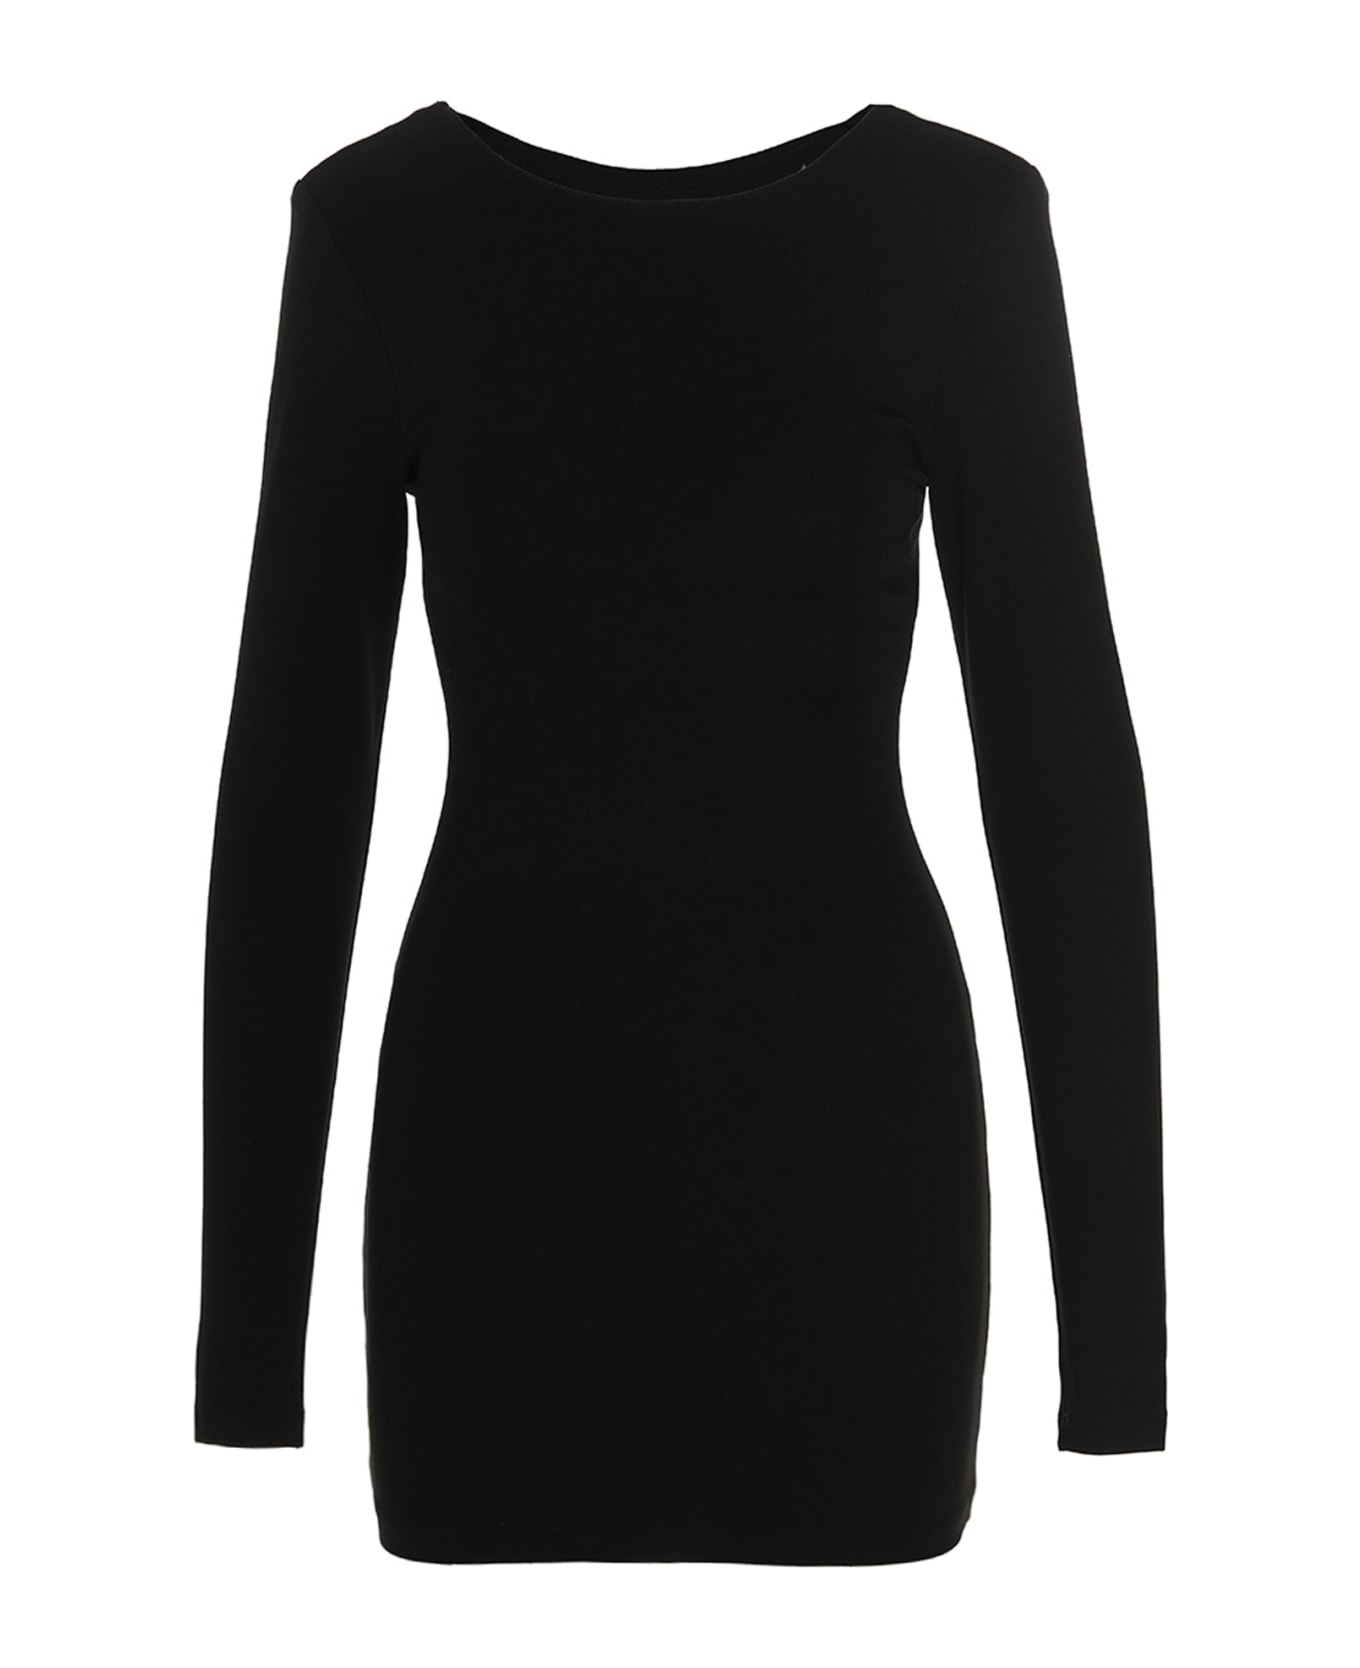 Rotate by Birger Christensen Logo Jersey Dress - Black  